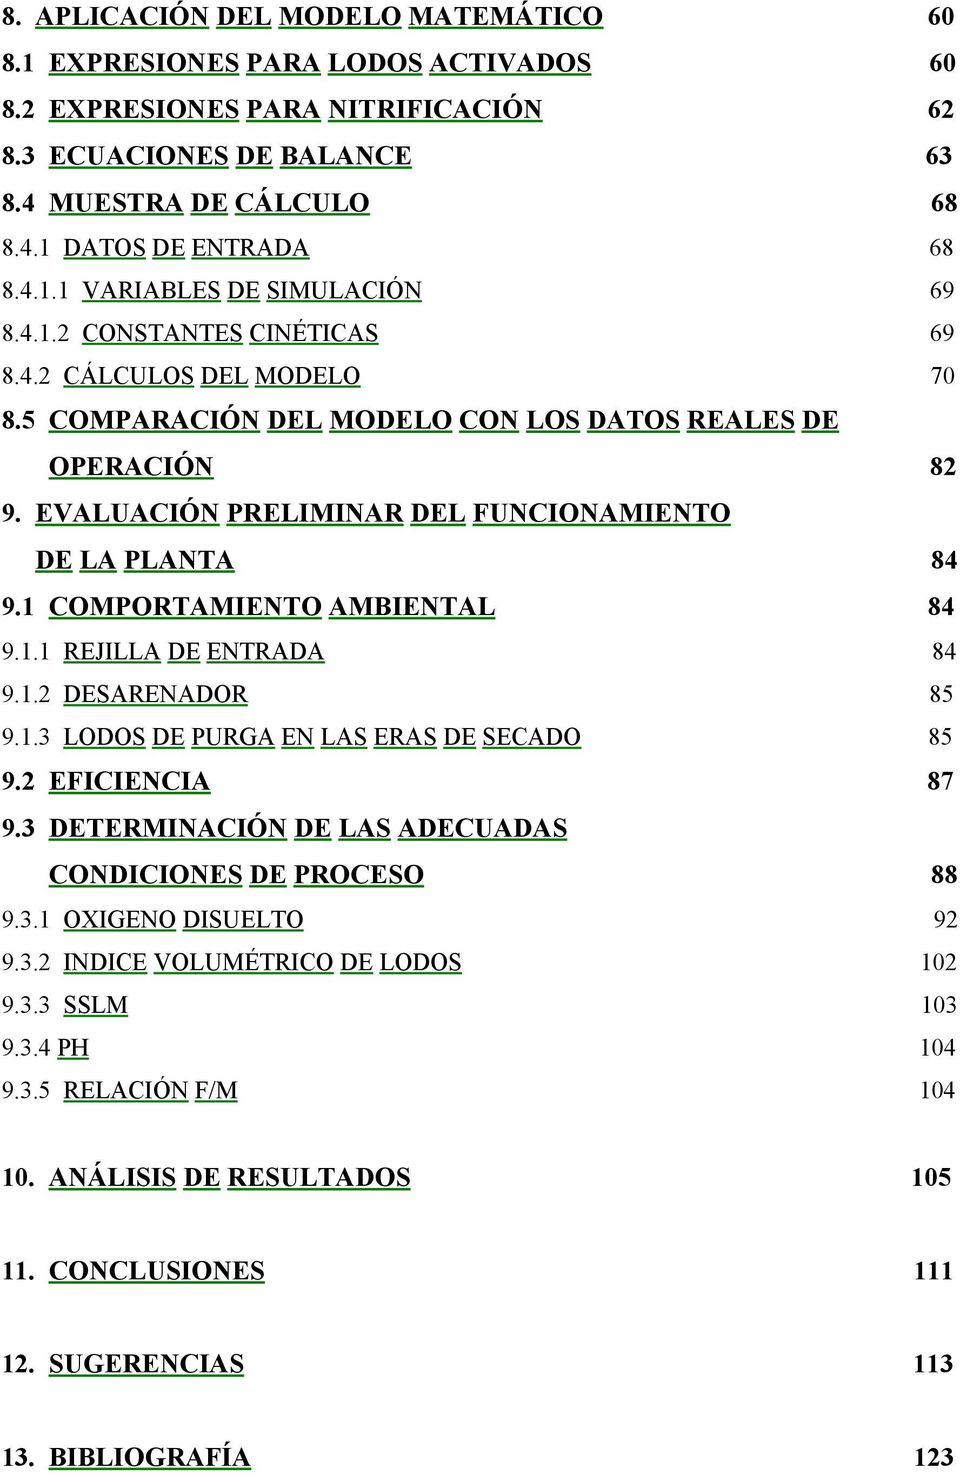 EVALUACIÓN PRELIMINAR DEL FUNCIONAMIENTO DE LA PLANTA 84 9.1 COMPORTAMIENTO AMBIENTAL 84 9.1.1 REJILLA DE ENTRADA 84 9.1.2 DESARENADOR 85 9.1.3 LODOS DE PURGA EN LAS ERAS DE SECADO 85 9.